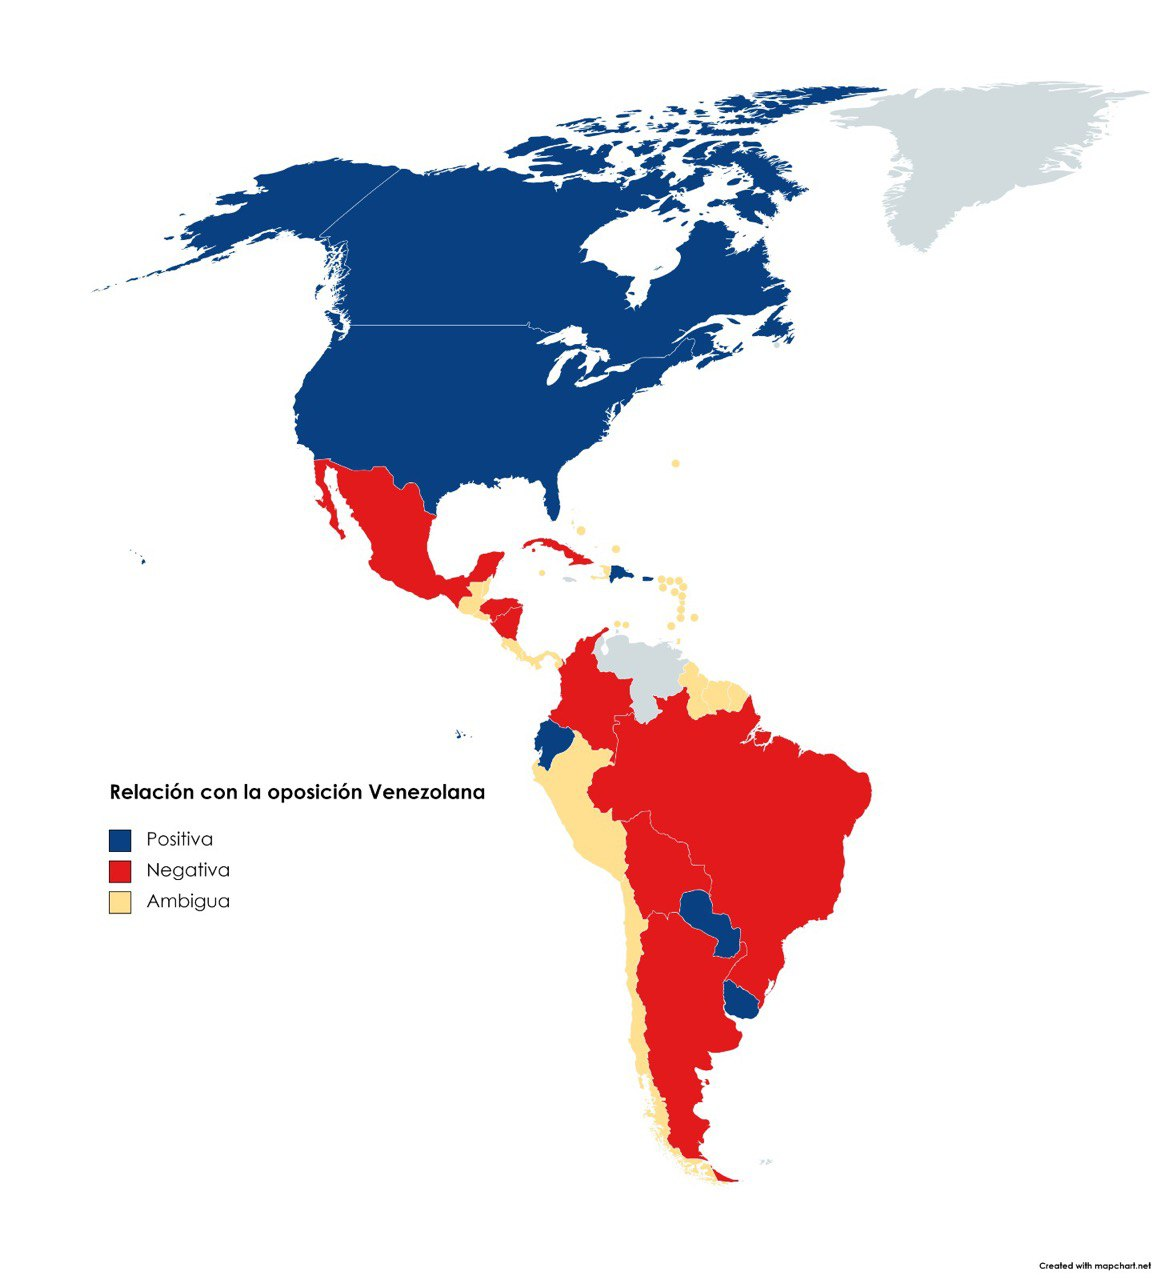 El mapa de la oposición venezolana en Latinoamérica